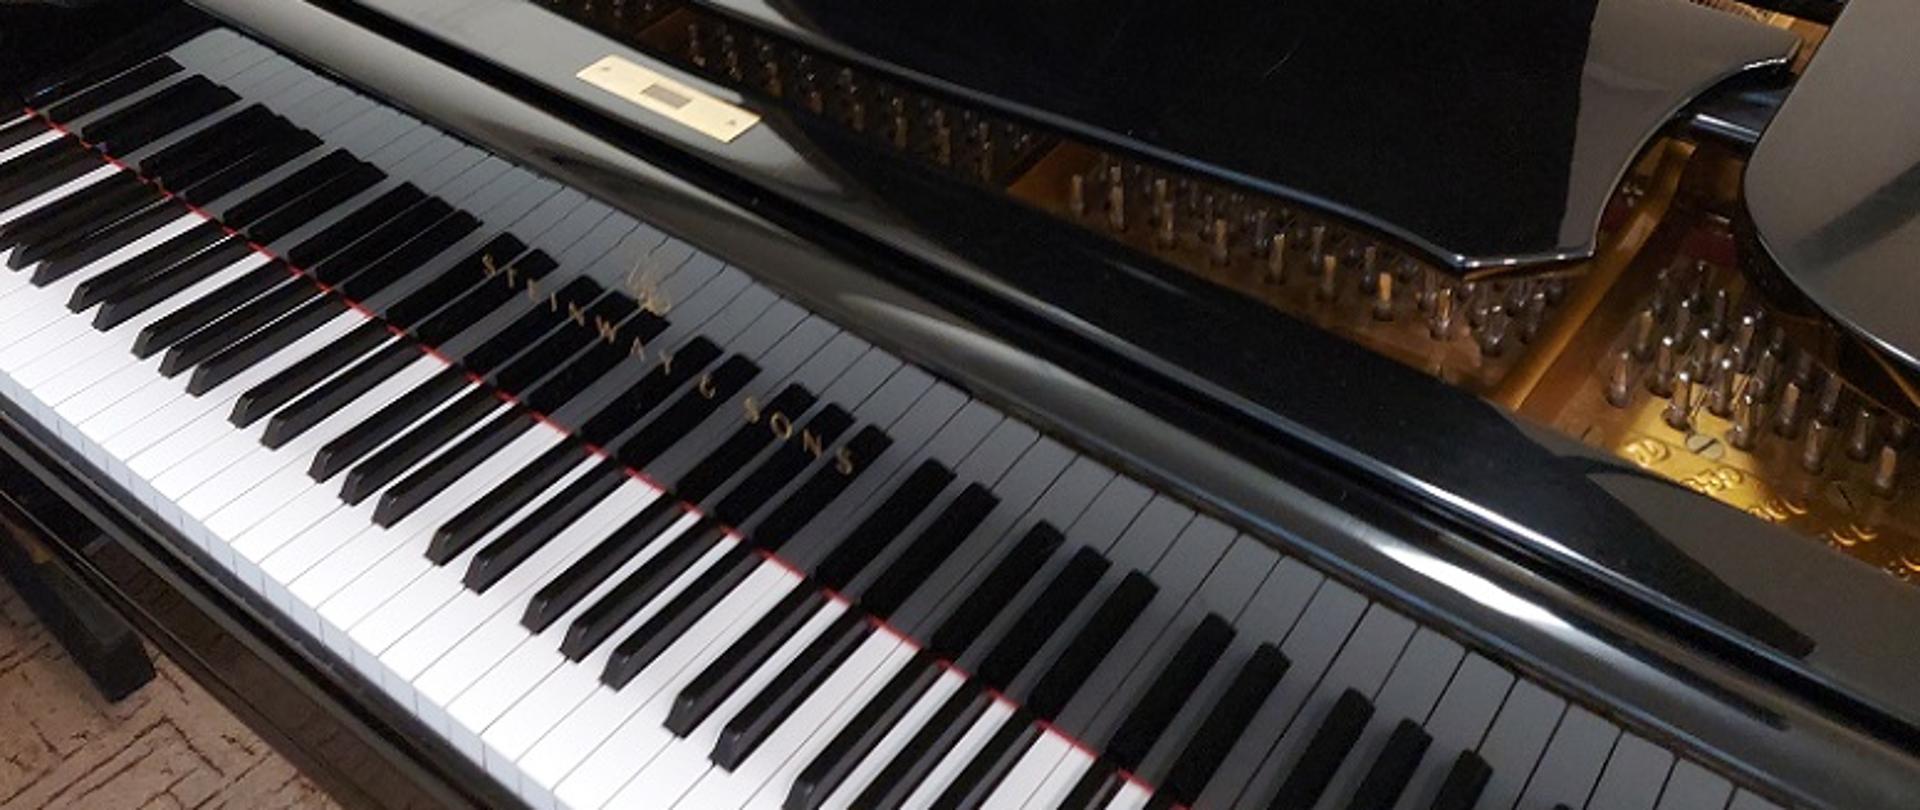 Zdjęcie przedstawia otwarty fortepian oraz czarno-białą klawiaturę